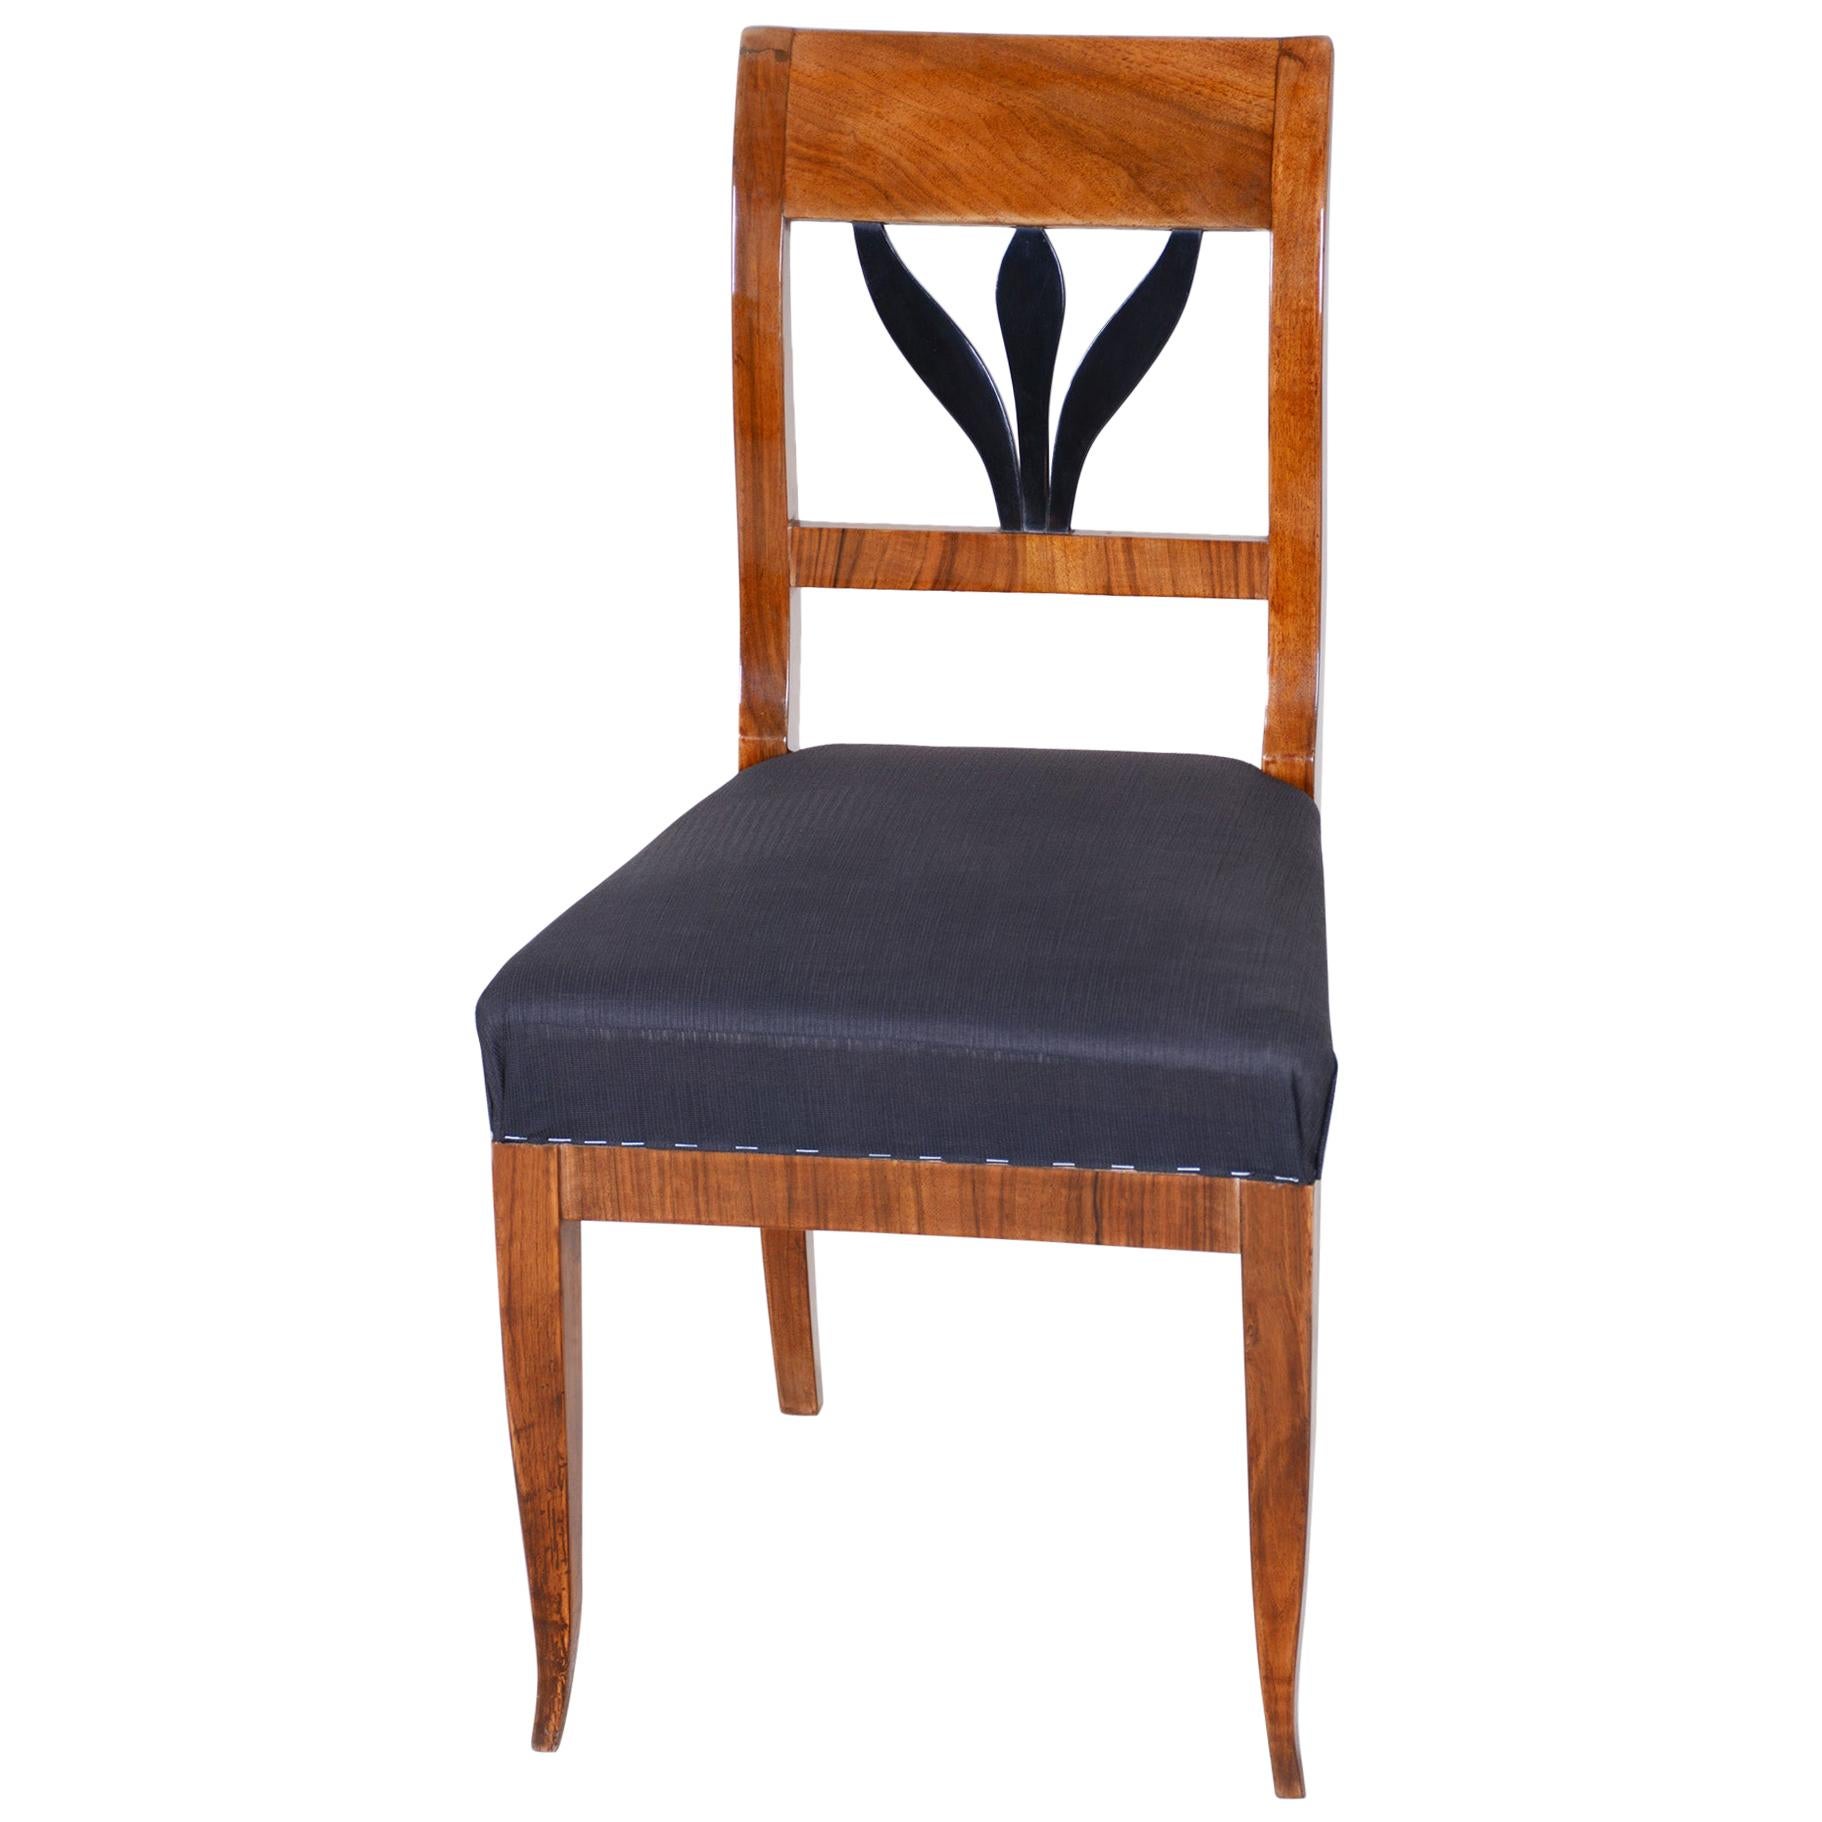 19th Century Czech Walnut Biedermeier Chair, Period 1830-1839, Restored